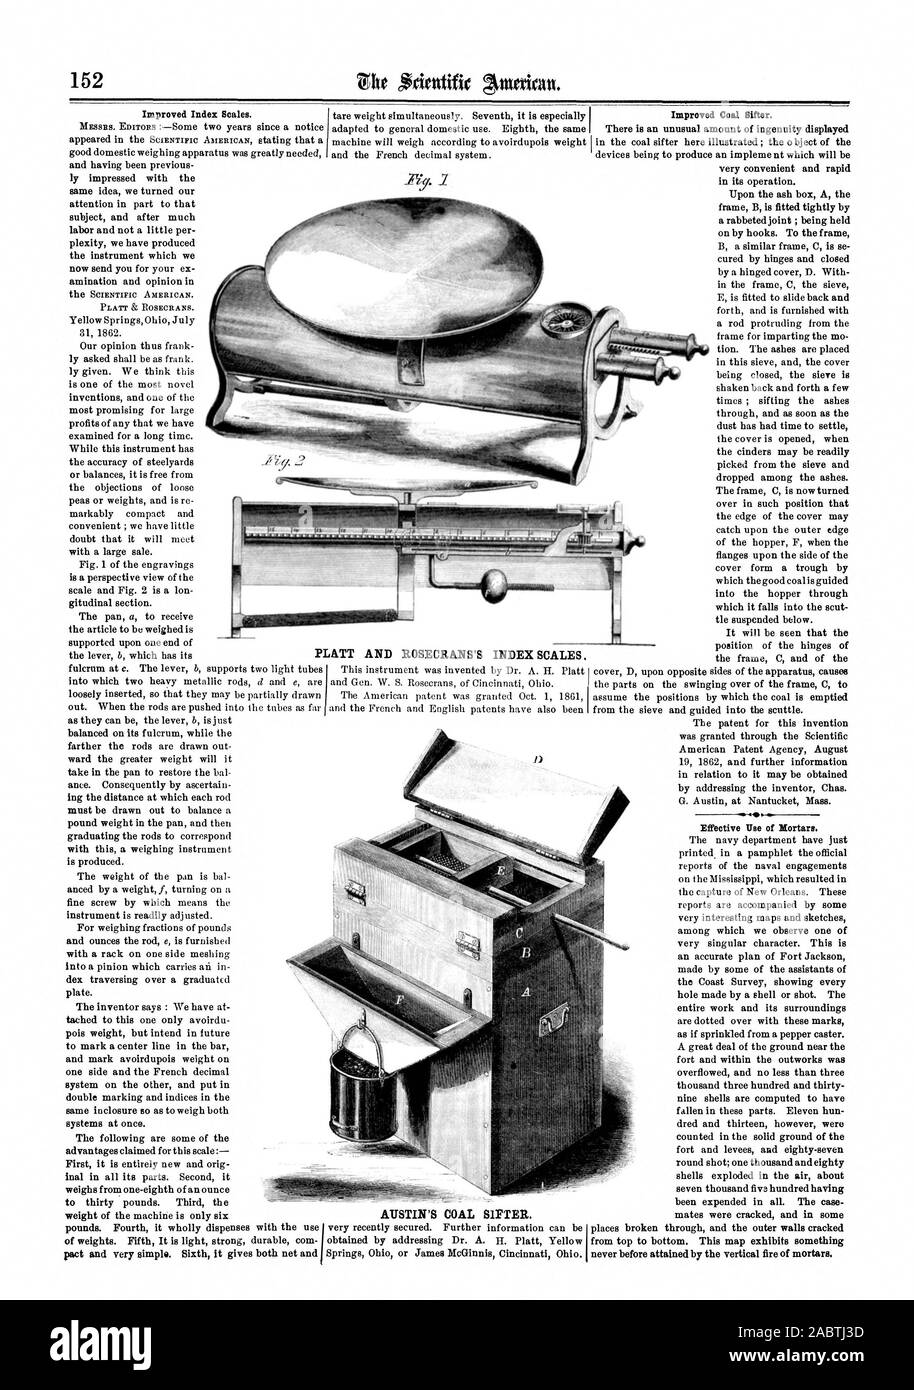 AUSTIN DEL CARBONE buratto. PLATT E ROSECRANS INDICE DELLA BILANCIA., Scientific American, 1862-09-06 Foto Stock